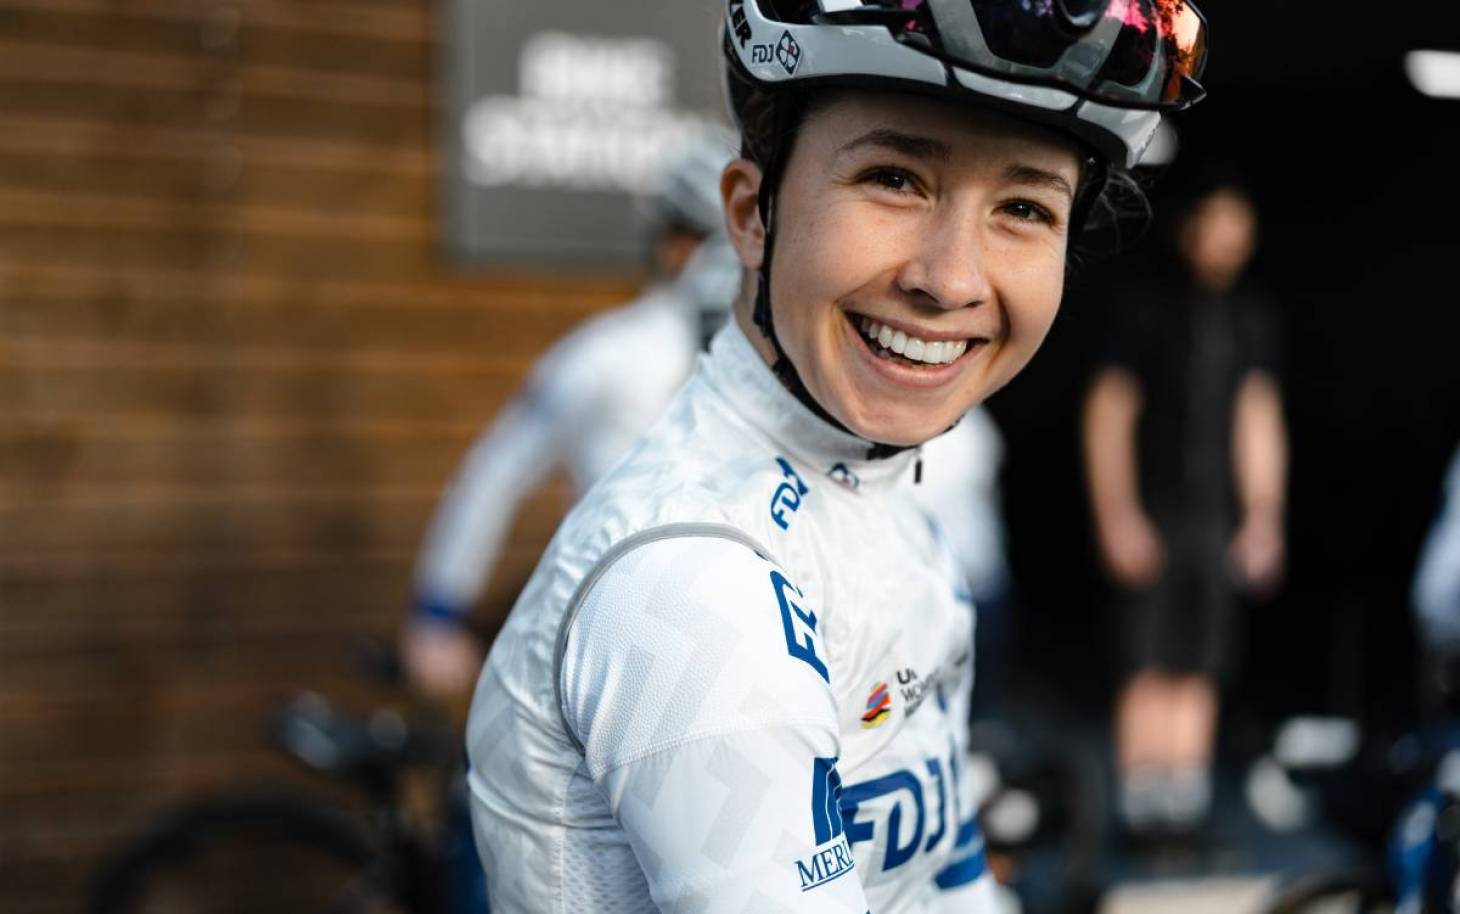 Cyclisme - Cecilie Uttrup Ludwig deux saisons de plus à la FDJ Suez Futuroscope